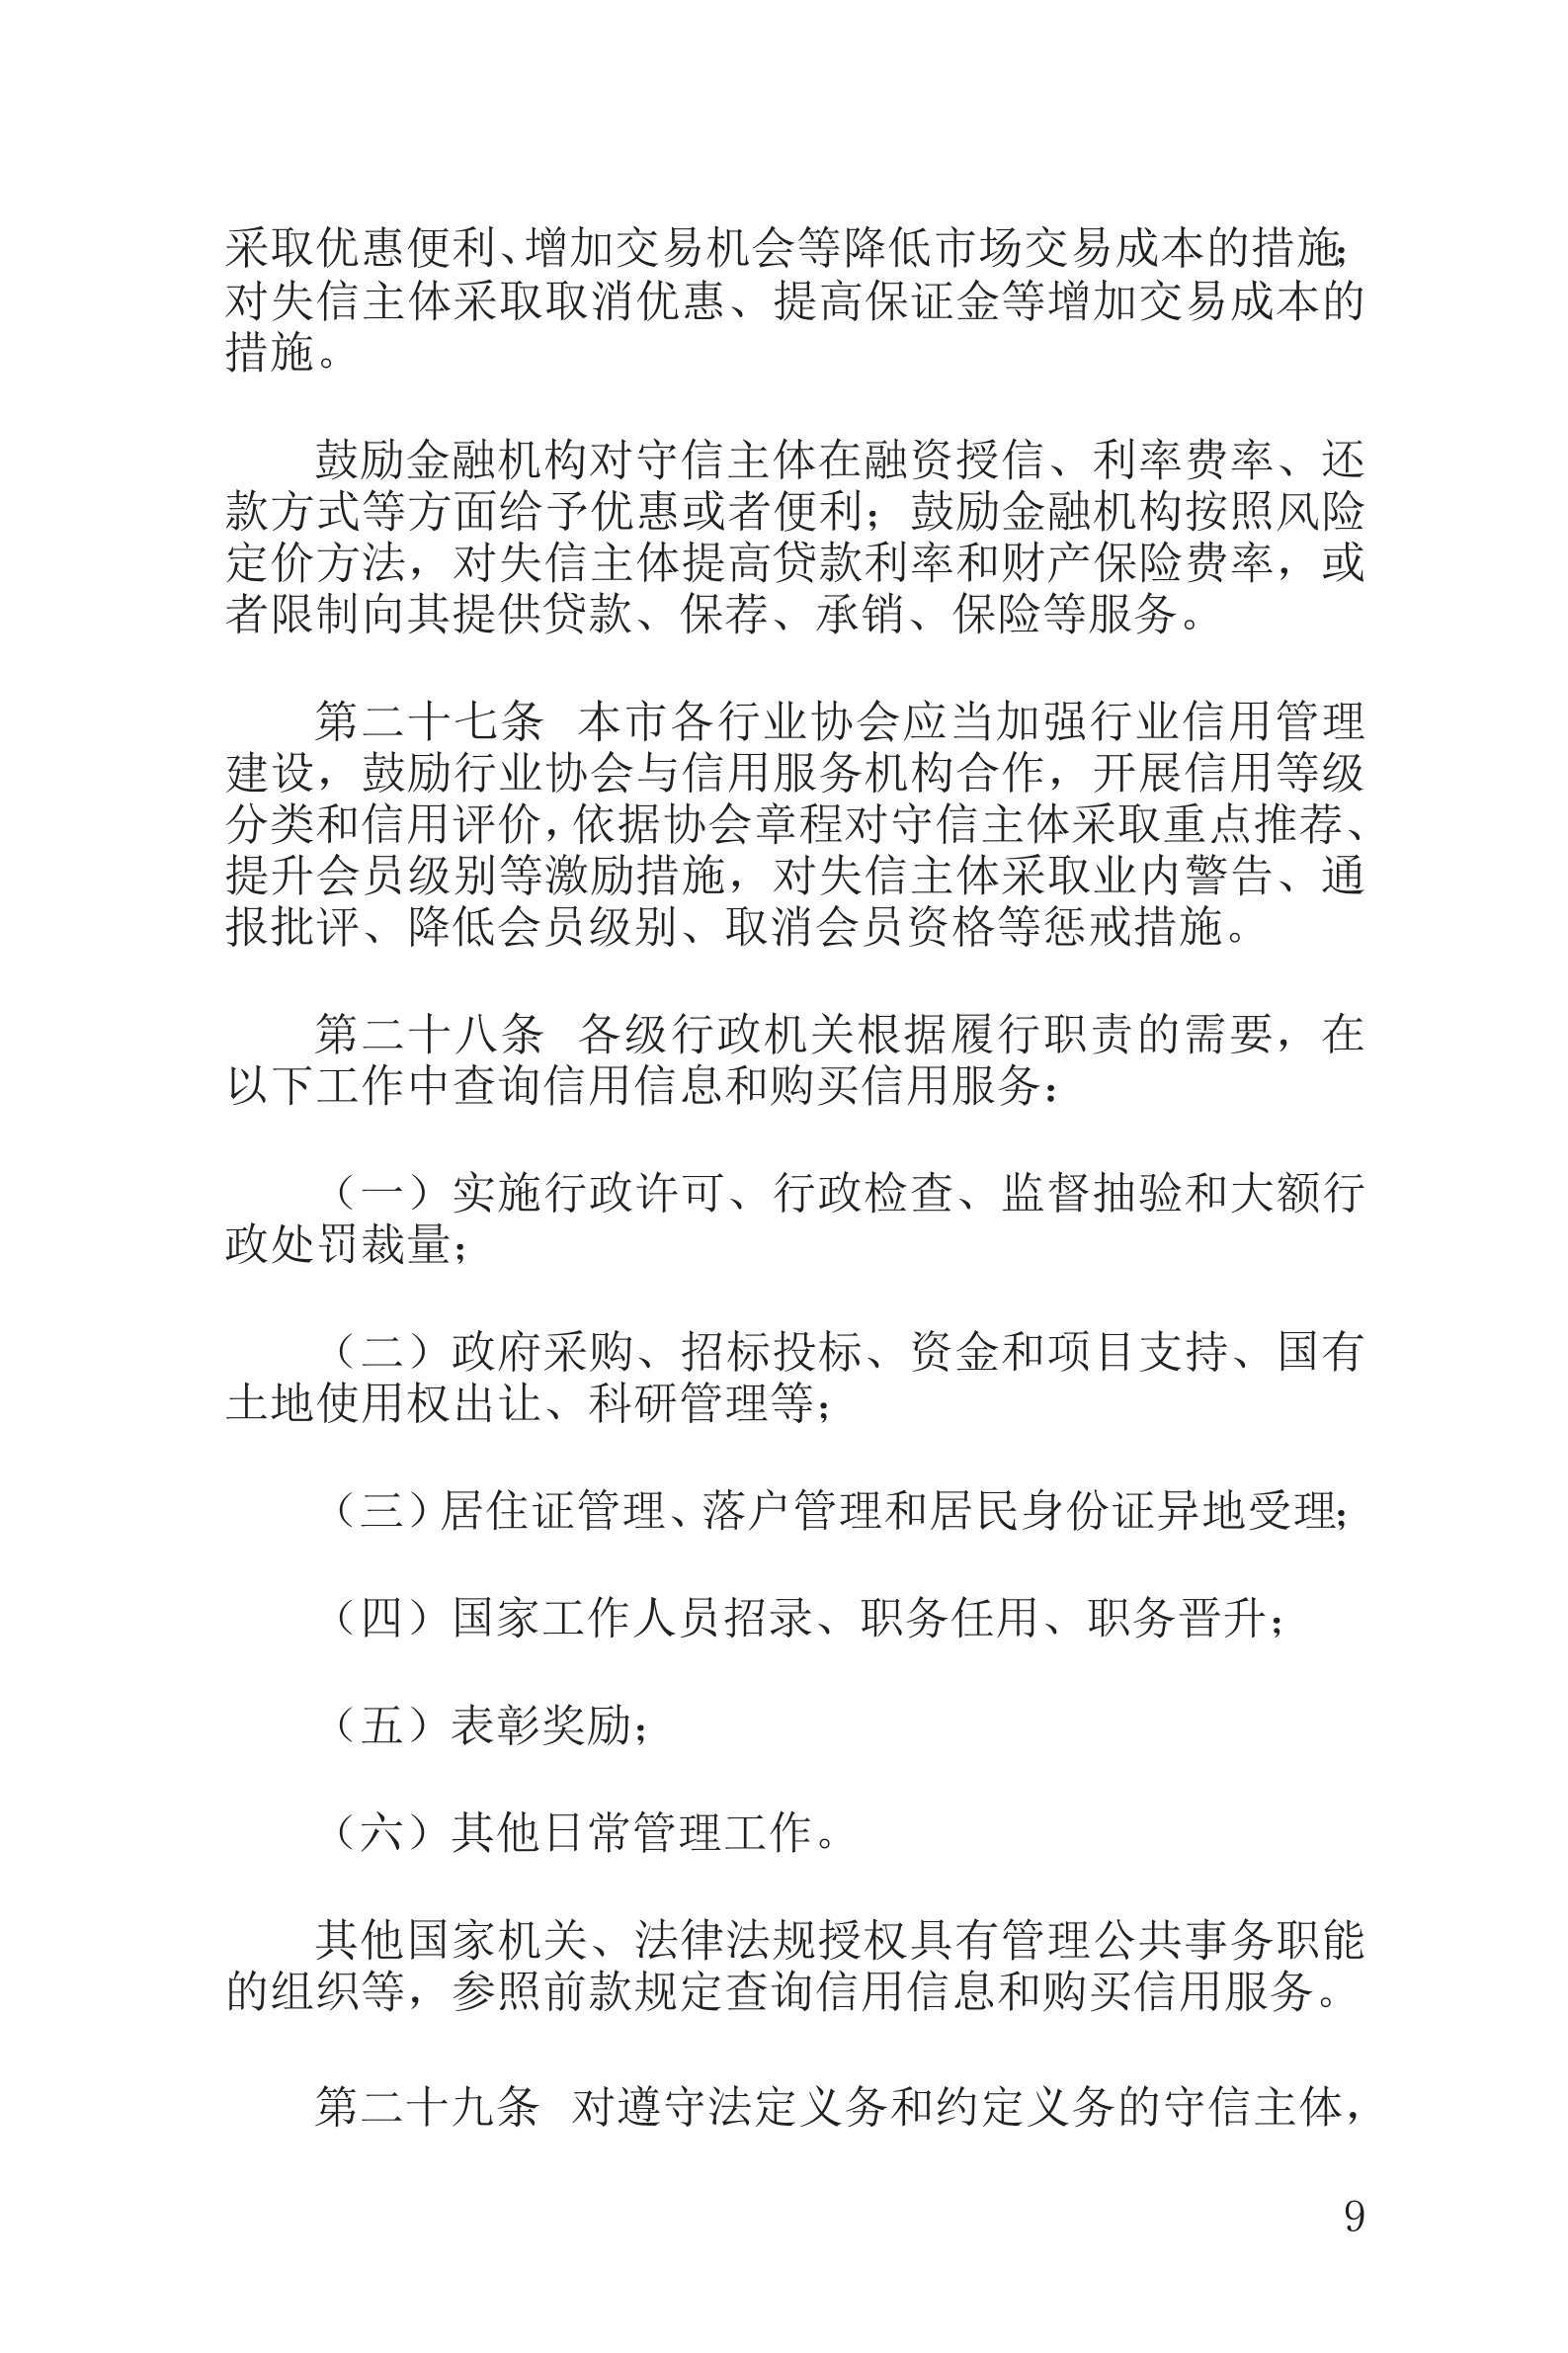 上海市社会信用条例_10.png